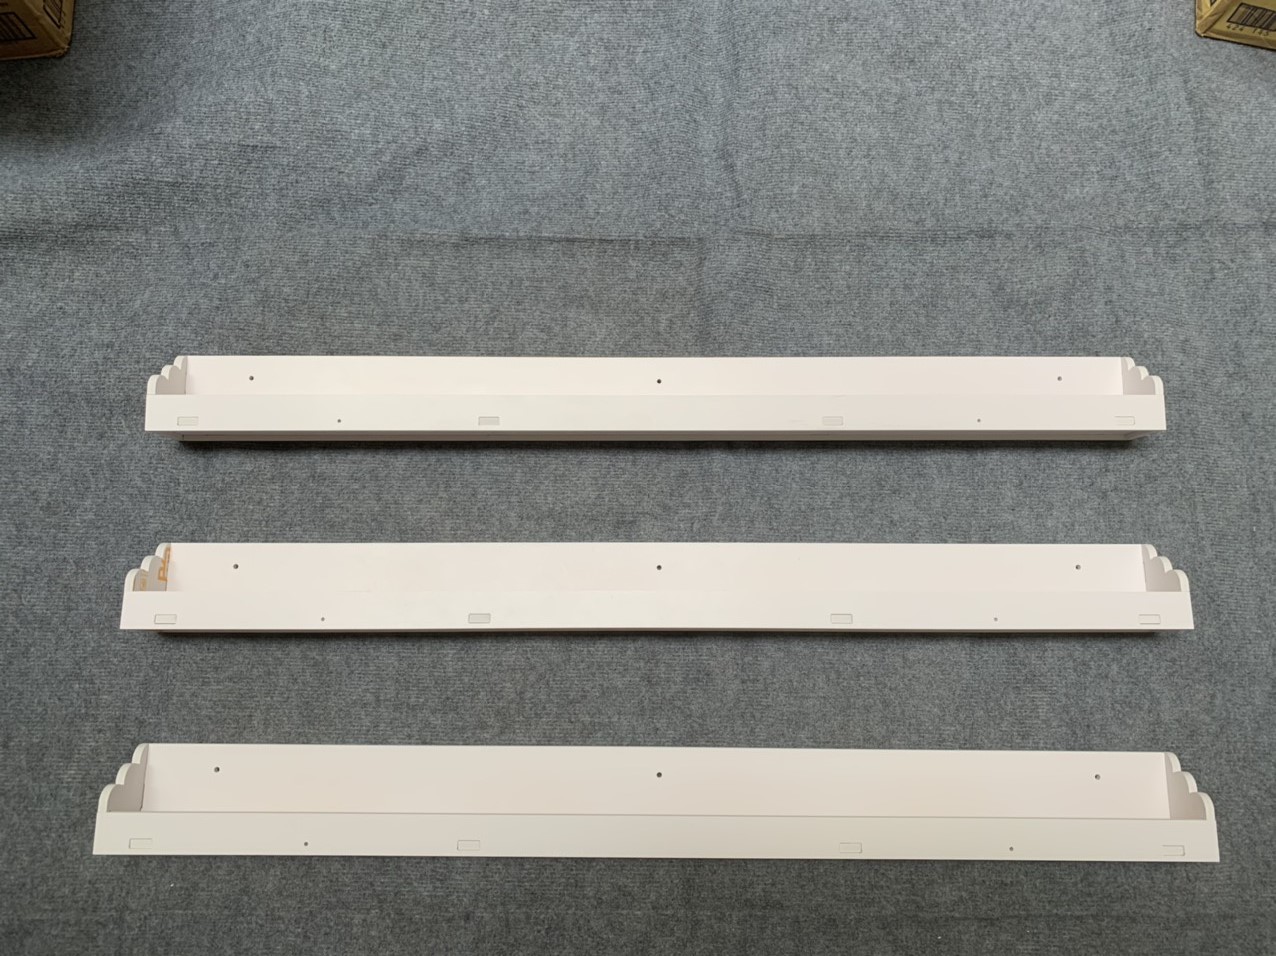 [HCM]Kệ Nail để sơn - Kệ sơn móng tay treo tường gỗ chống ẩm bộ 3 thanh ngang 1m (Trắng)